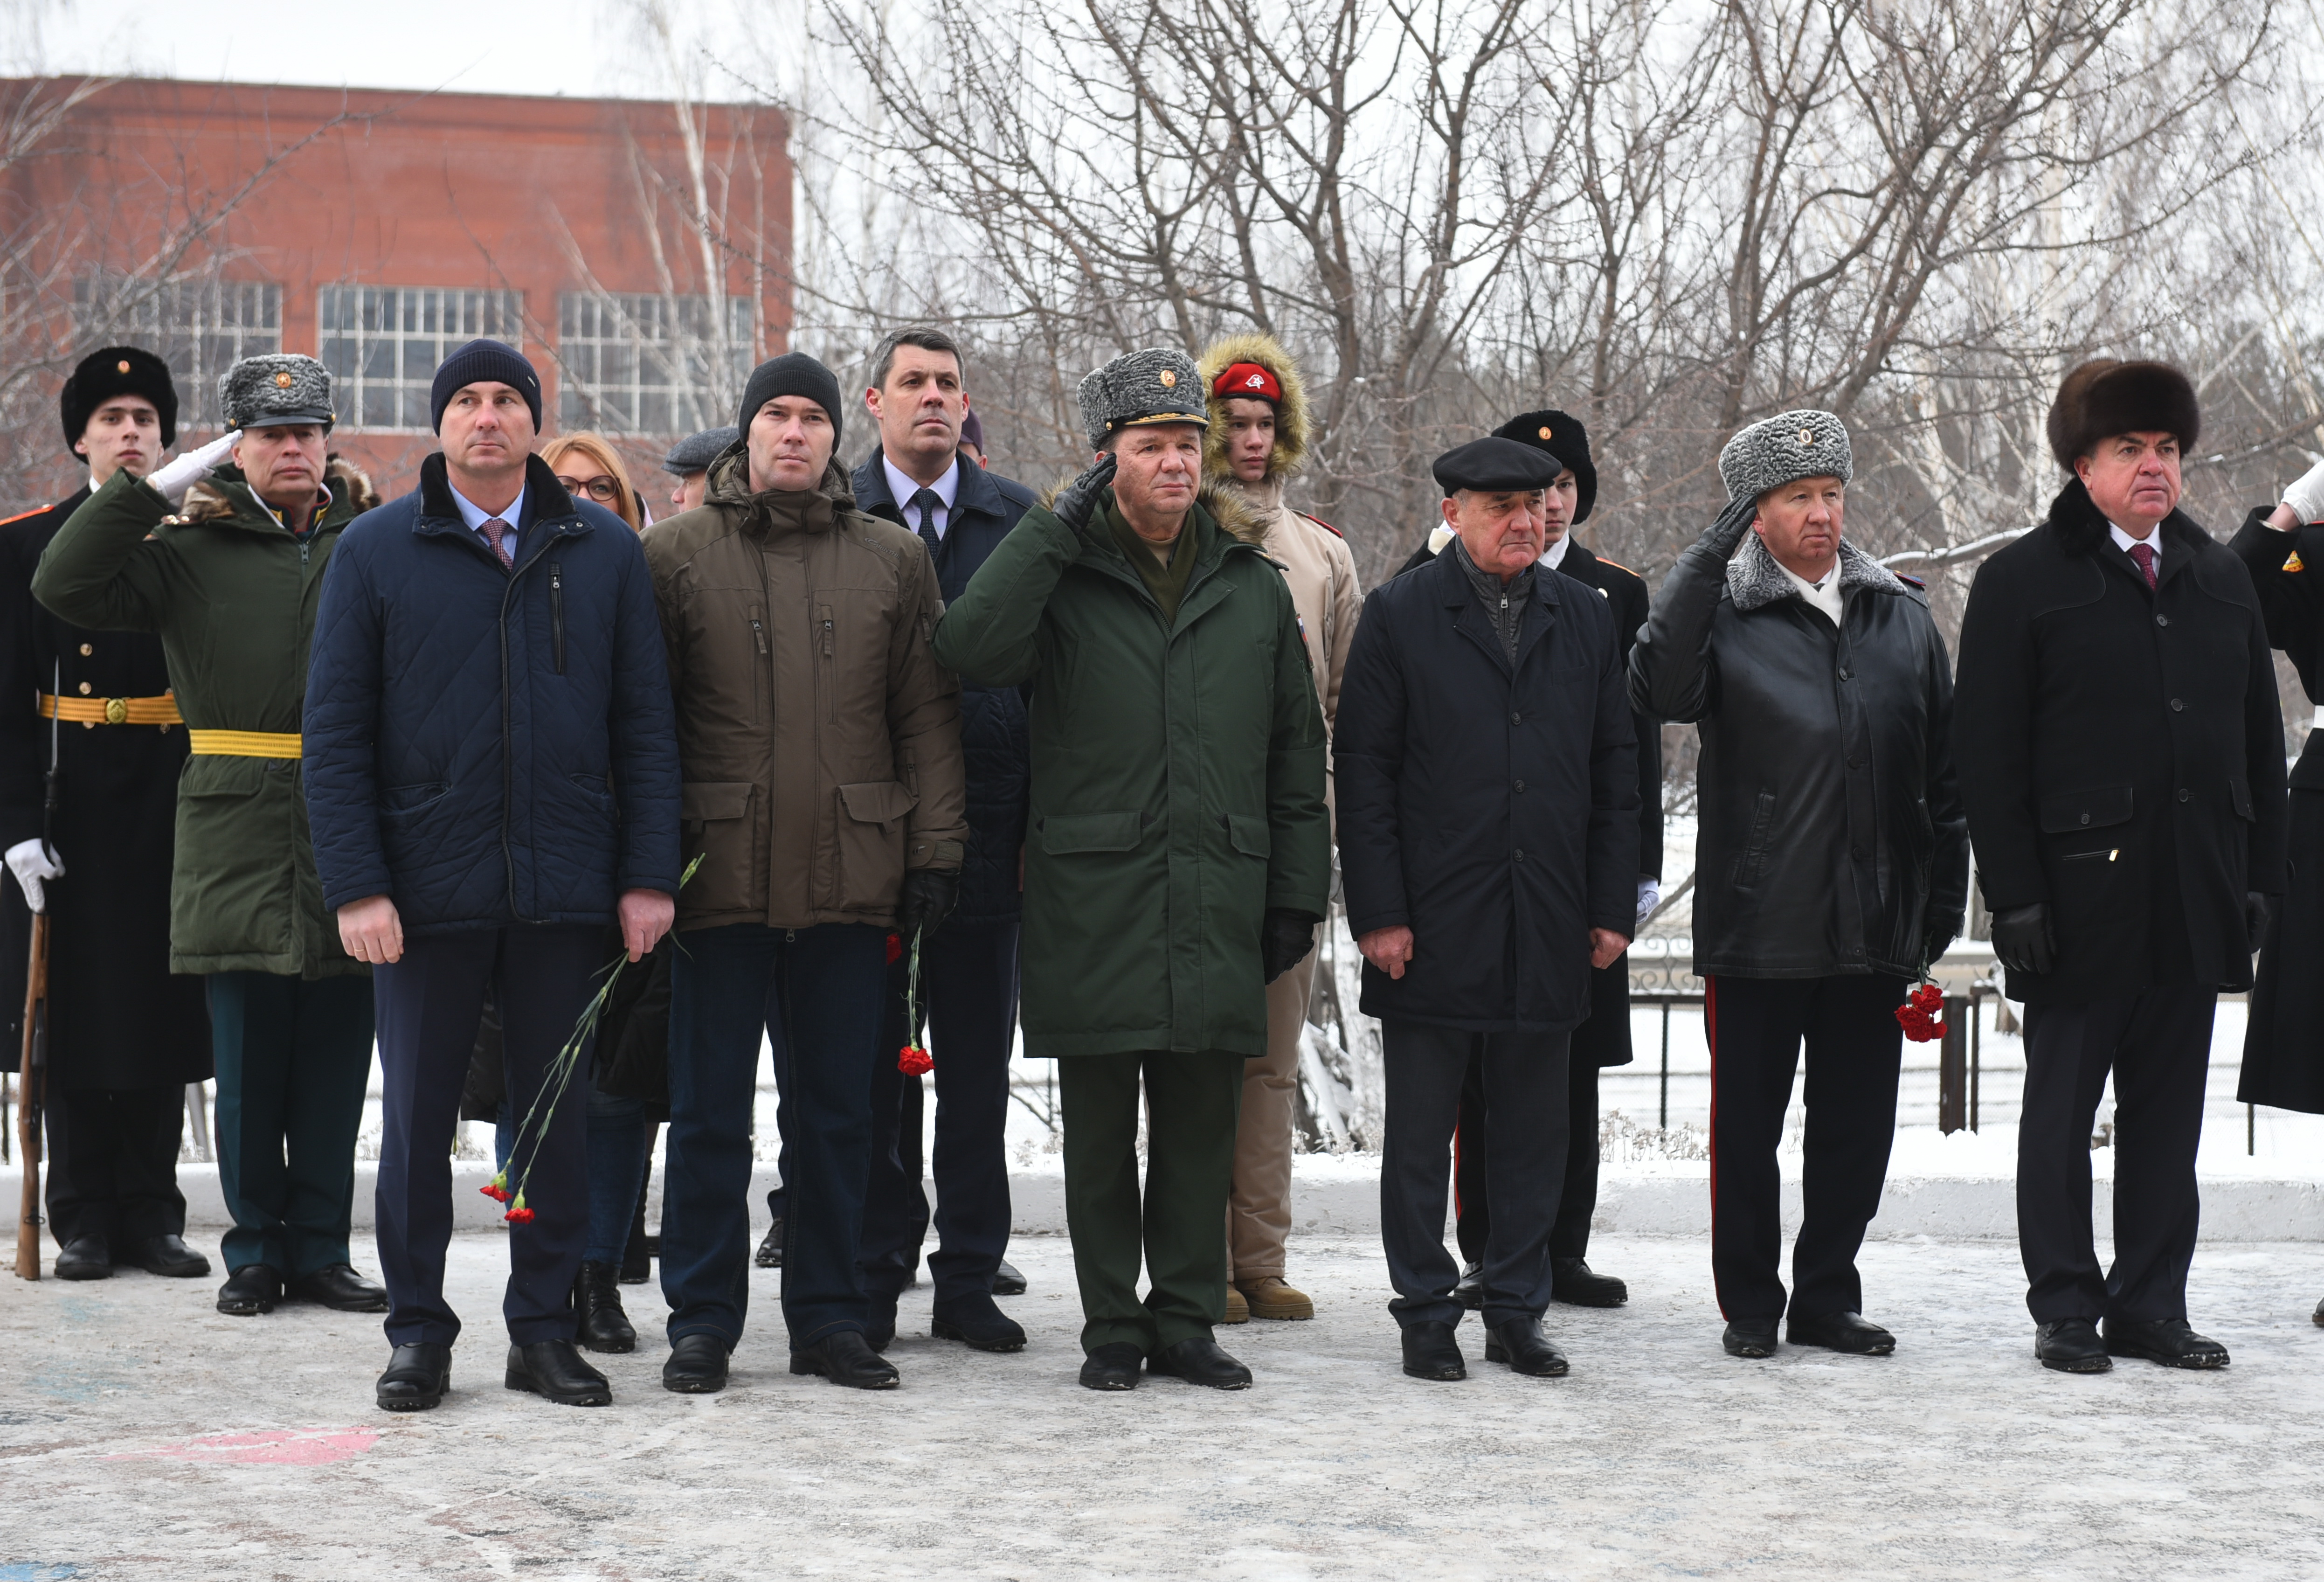 В Челнах открыли памятник младшему сержанту 6-ой роты Псковской дивизии Дмитрию Бадретдинову